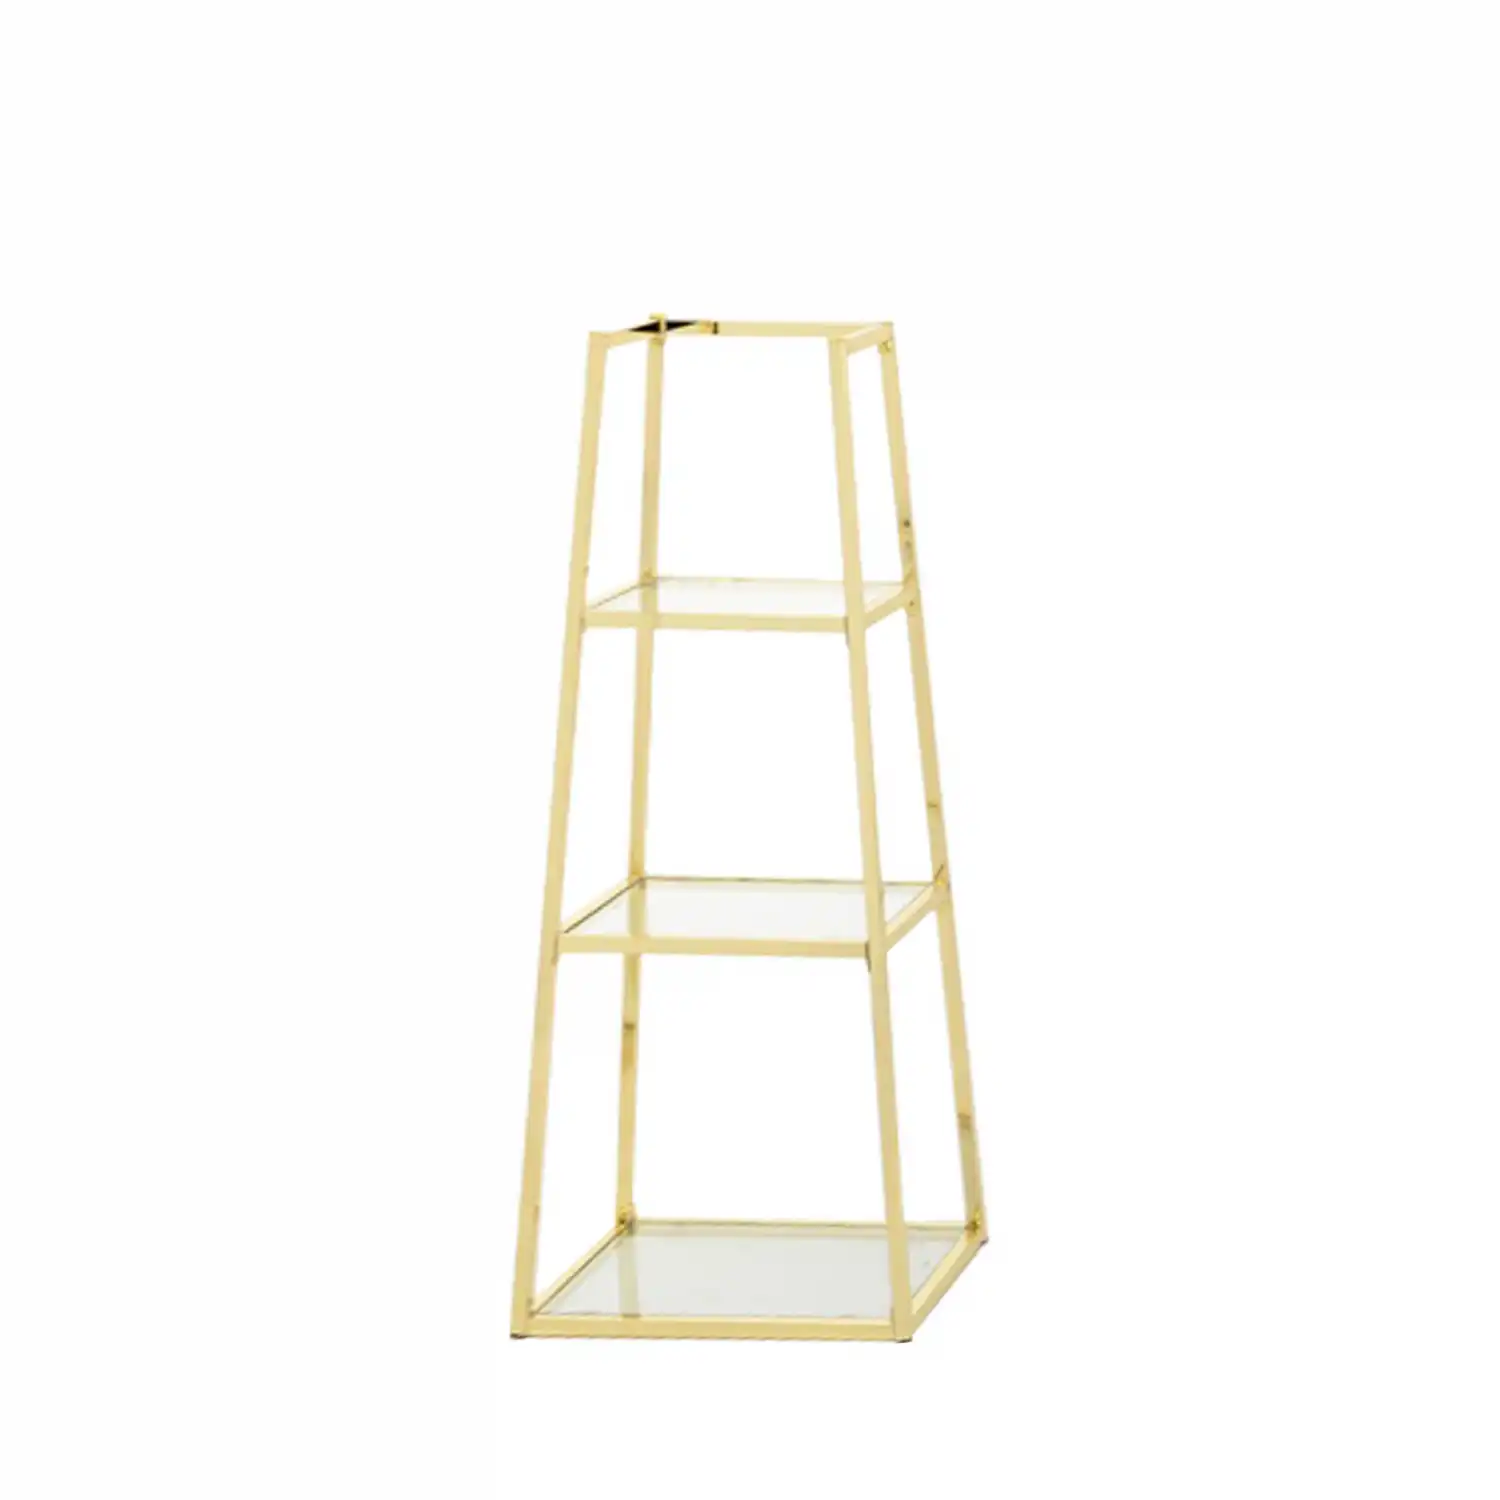 Small Logan Gold Ladder Display Unit